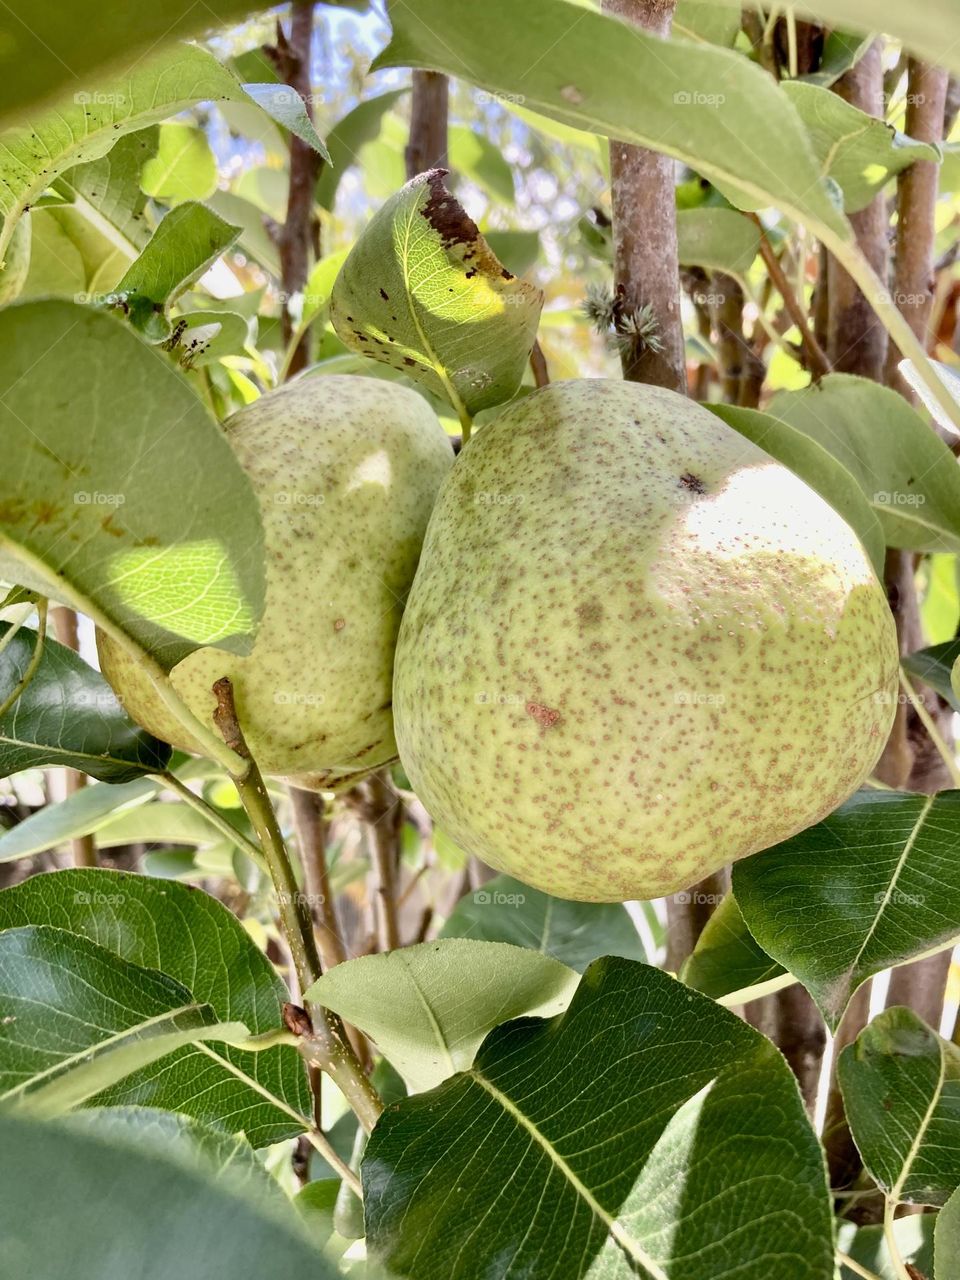 🇺🇸 A very nice fruit tree: water pears, very tasty and fertilized with organic material. / 🇧🇷 Um pé frutífero muito bacana: pêras d’água, bem saborosas e adubadas com material orgânico. 